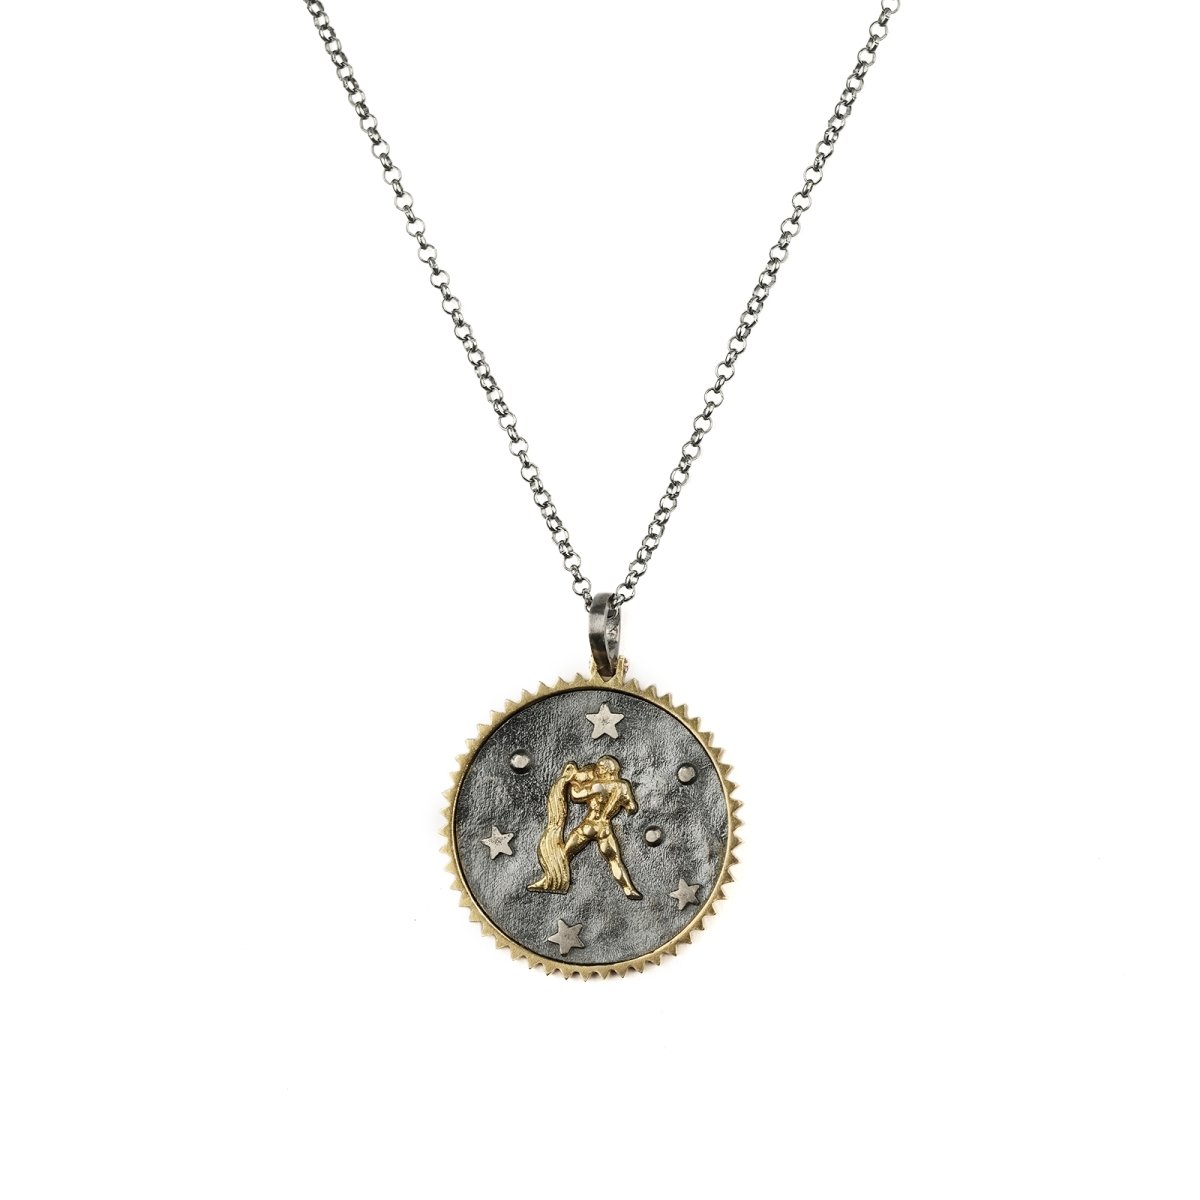 Zodiac Necklace "Aquarius" - Pregomesh